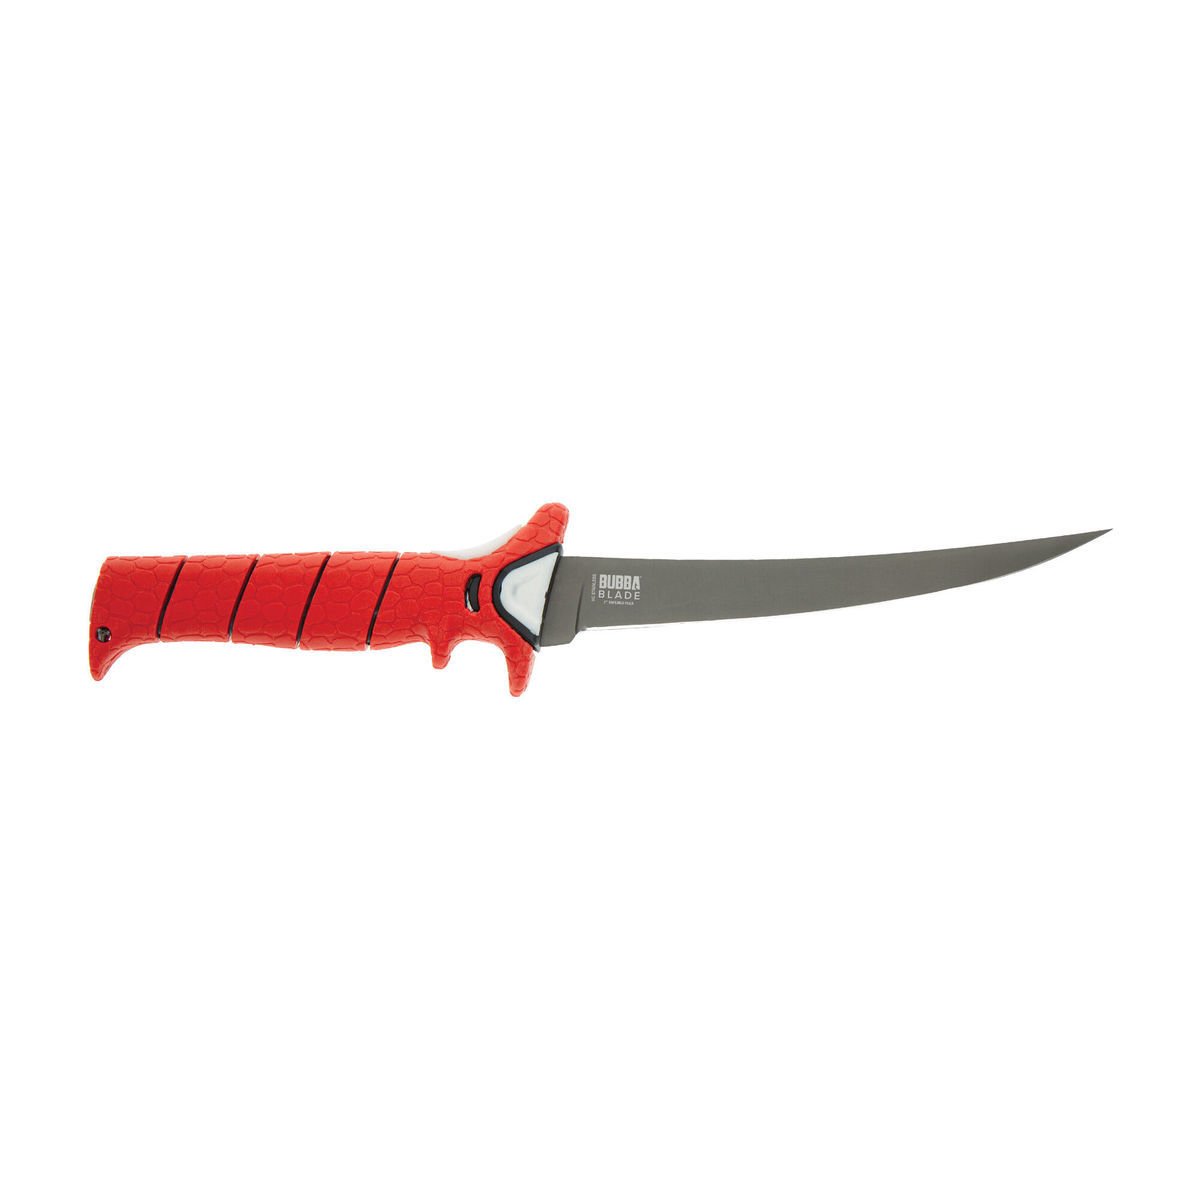 https://www.sportsmans.com/medias/bubba-multi-flex-interchangeable-blade-fillet-knife-kit-1626629-1.jpg?context=bWFzdGVyfGltYWdlc3wzOTYxOHxpbWFnZS9qcGVnfGFXMWhaMlZ6TDJnNE9DOW9PR1l2T1RFNU5UUTFNVFkzT0RjMU1DNXFjR2N8YmM3OGExNWQxZWRlZjUwZTcwOGZkMWFlMjA4ODdlODdkYmFlYzA0NDQzNWVhMzE0YzQzYzZkYzIxNWQ2MDhmNQ